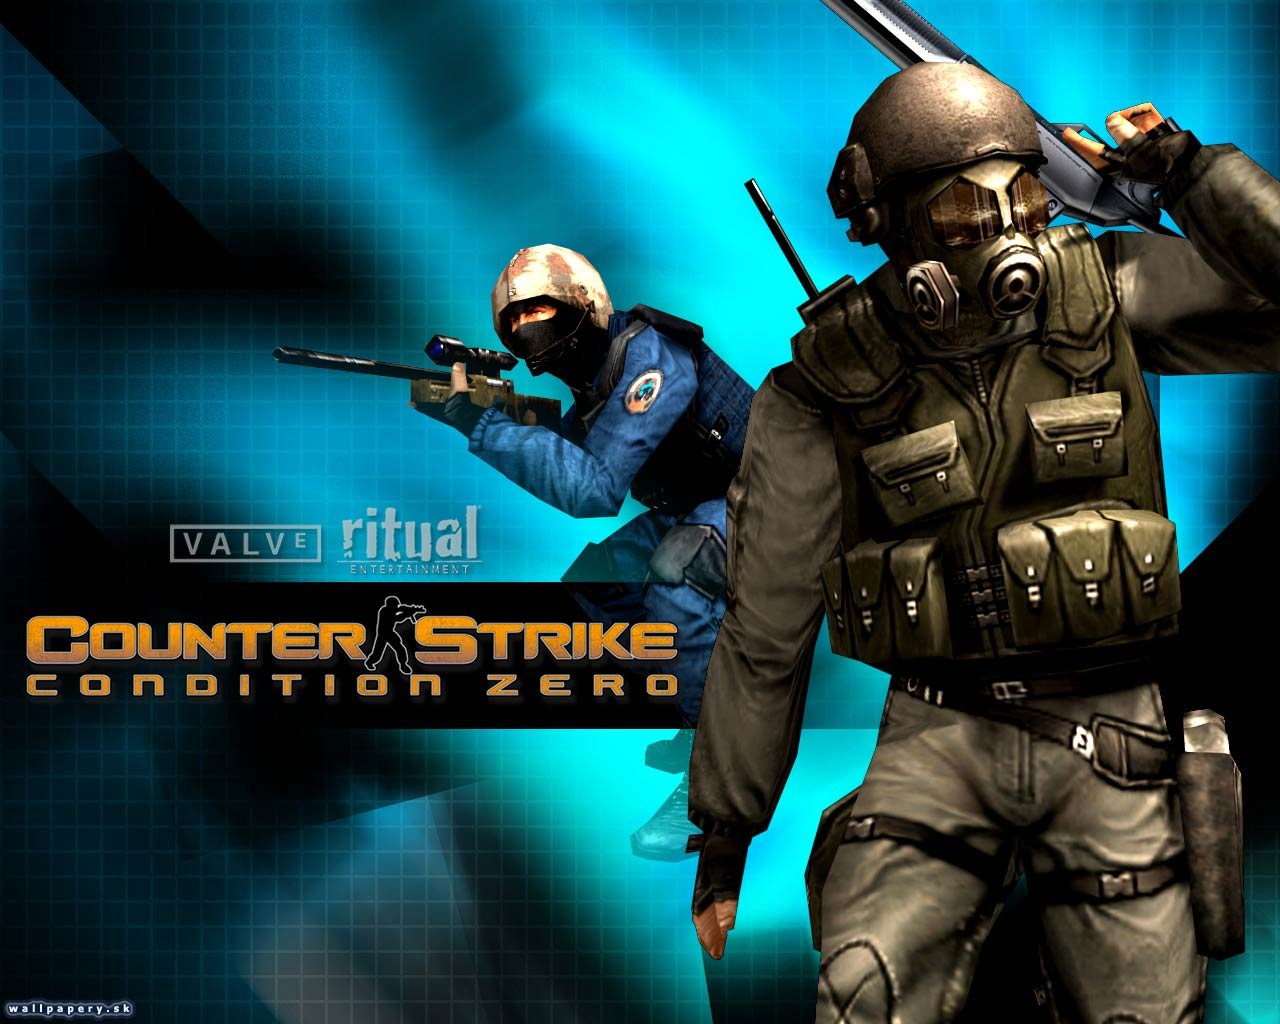 Counter-Strike Condition Zero Deleted Scenes #4 | Building Recon